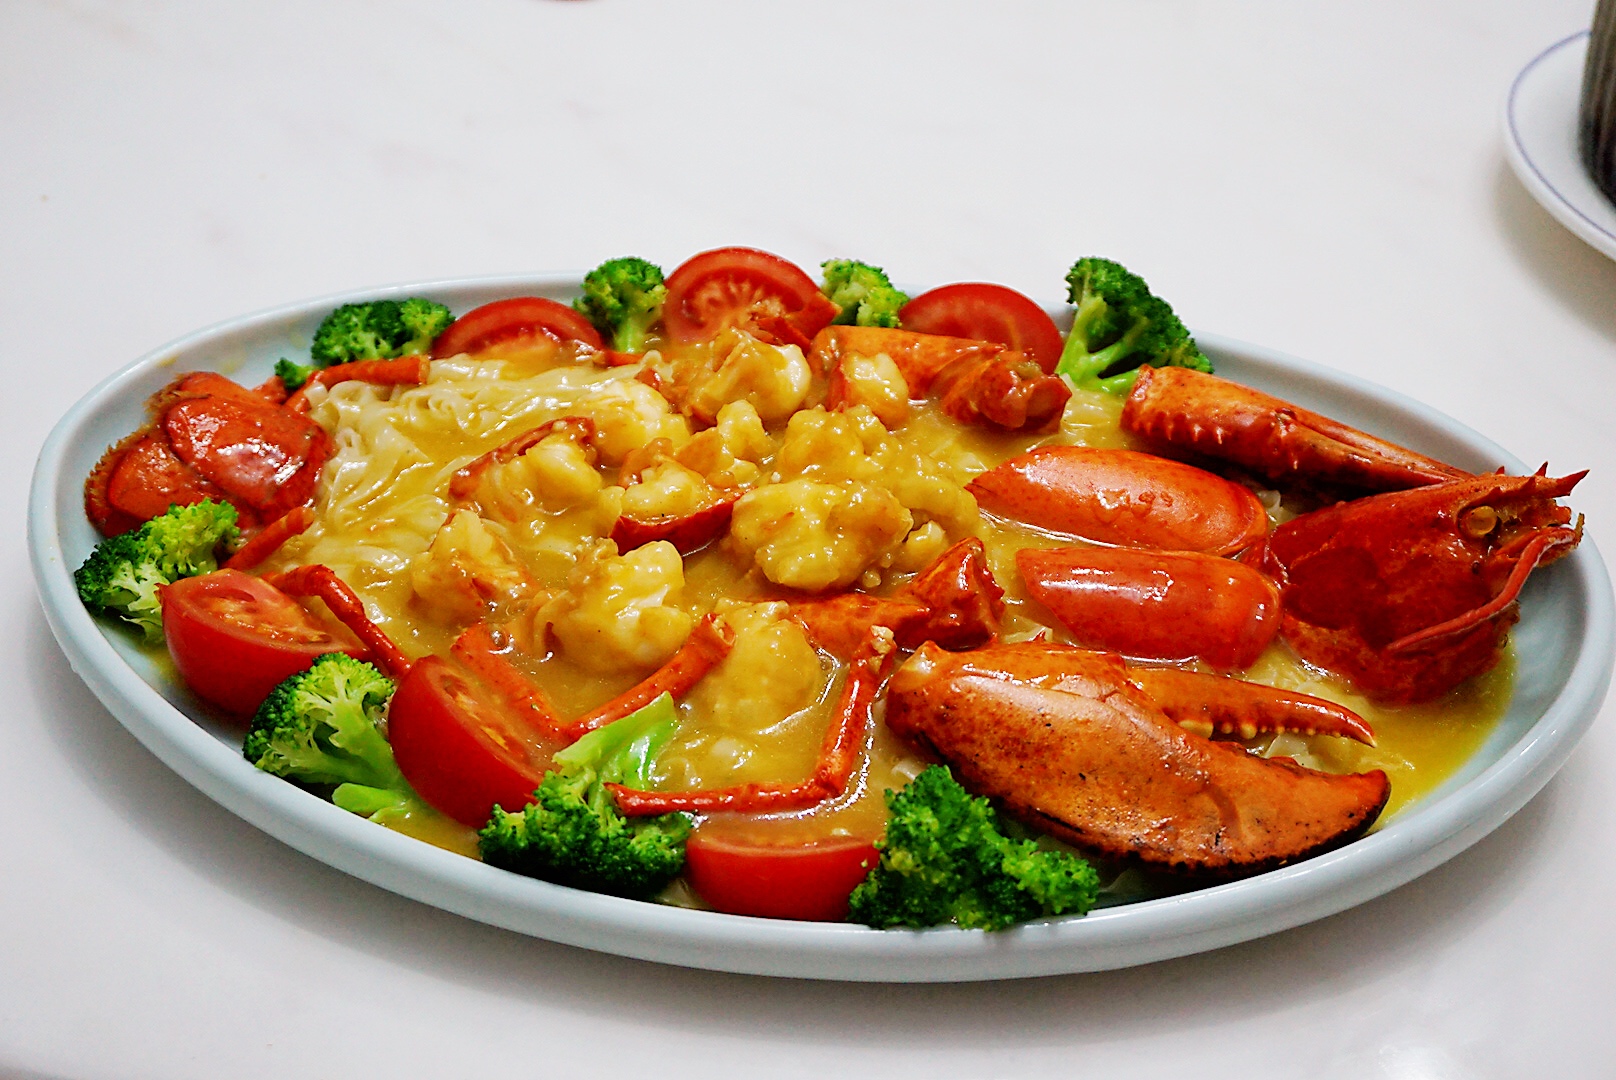 龙虾伊面:红彤彤的一大份,绝对的硬菜,吸收了满满龙虾汁的伊面又香又